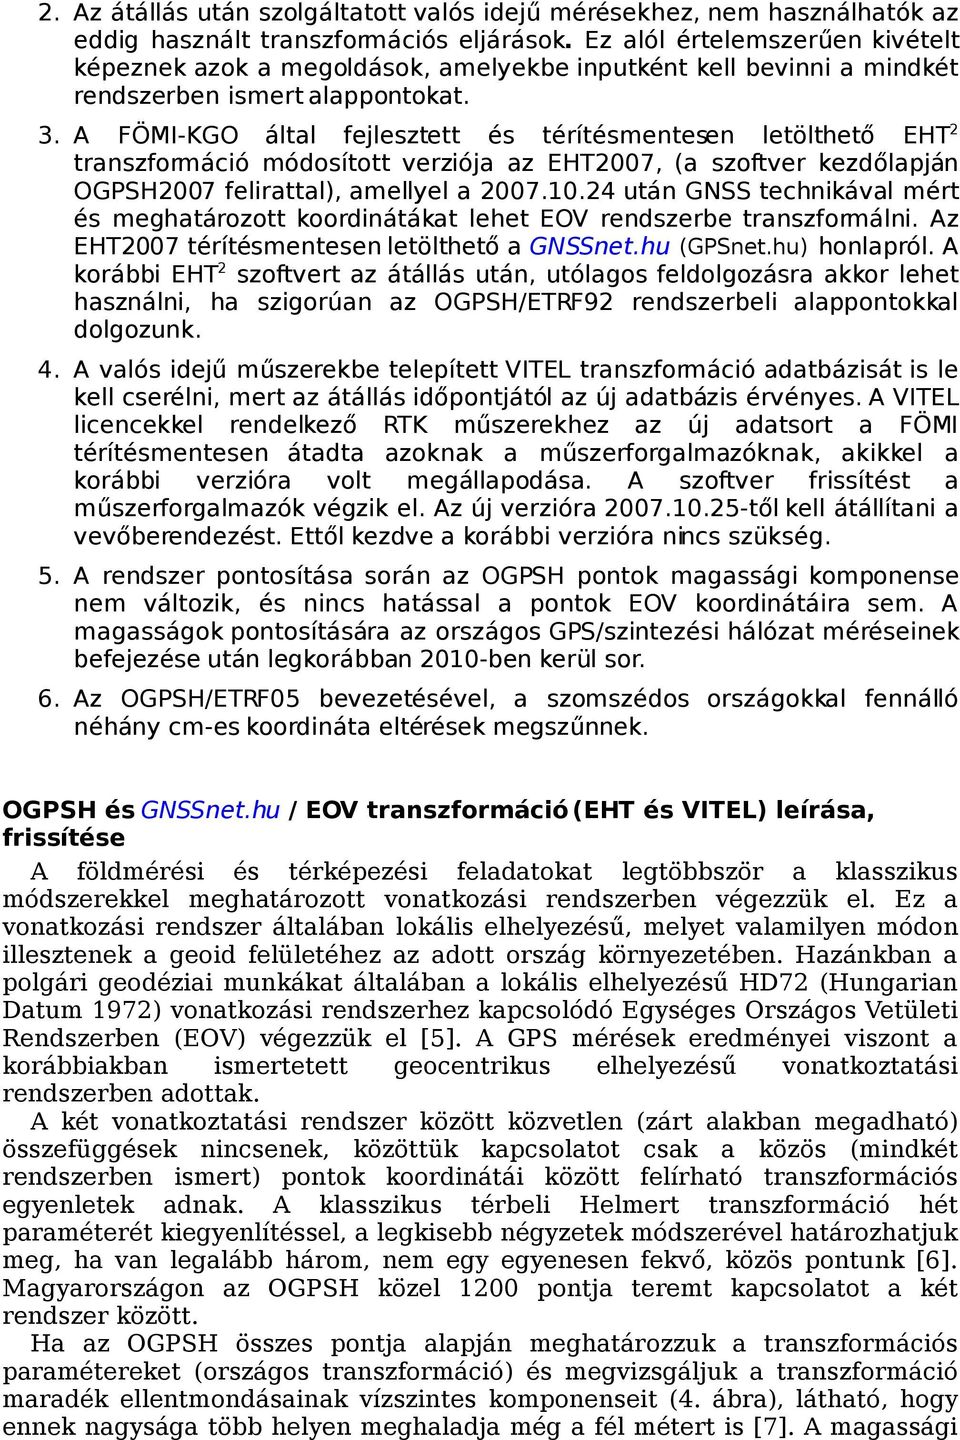 A FÖMI-KGO által fejlesztett és térítésmentesen letölthető EHT 2 transzformáció módosított verziója az EHT2007, (a szoftver kezdőlapján OGPSH2007 felirattal), amellyel a 2007.10.